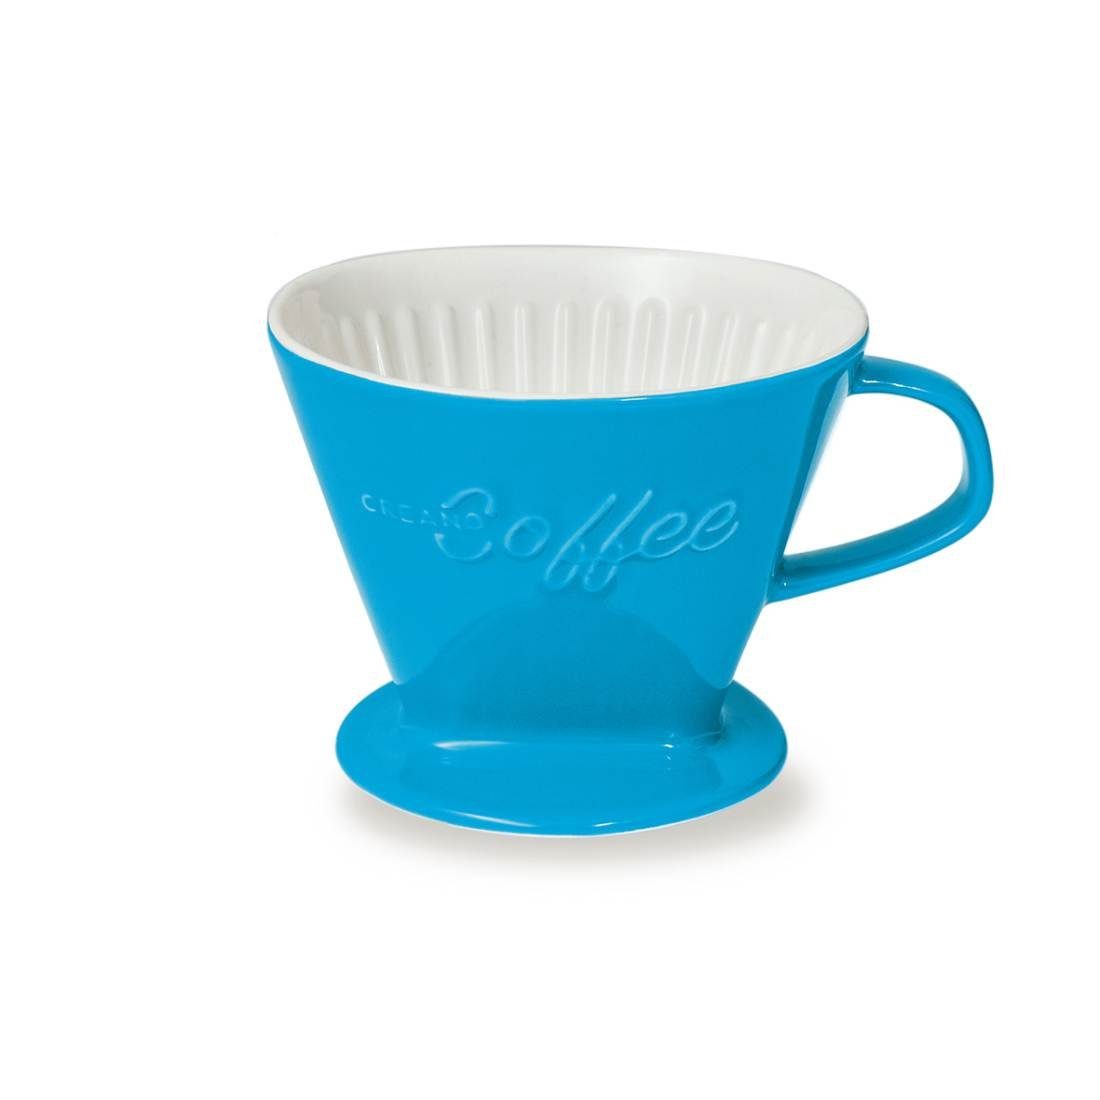 Filtertüten, Filter Kaffeefilter Press (Blau), Creano Kanne Größe French Creano 4 Manuell 4 für Porzellan